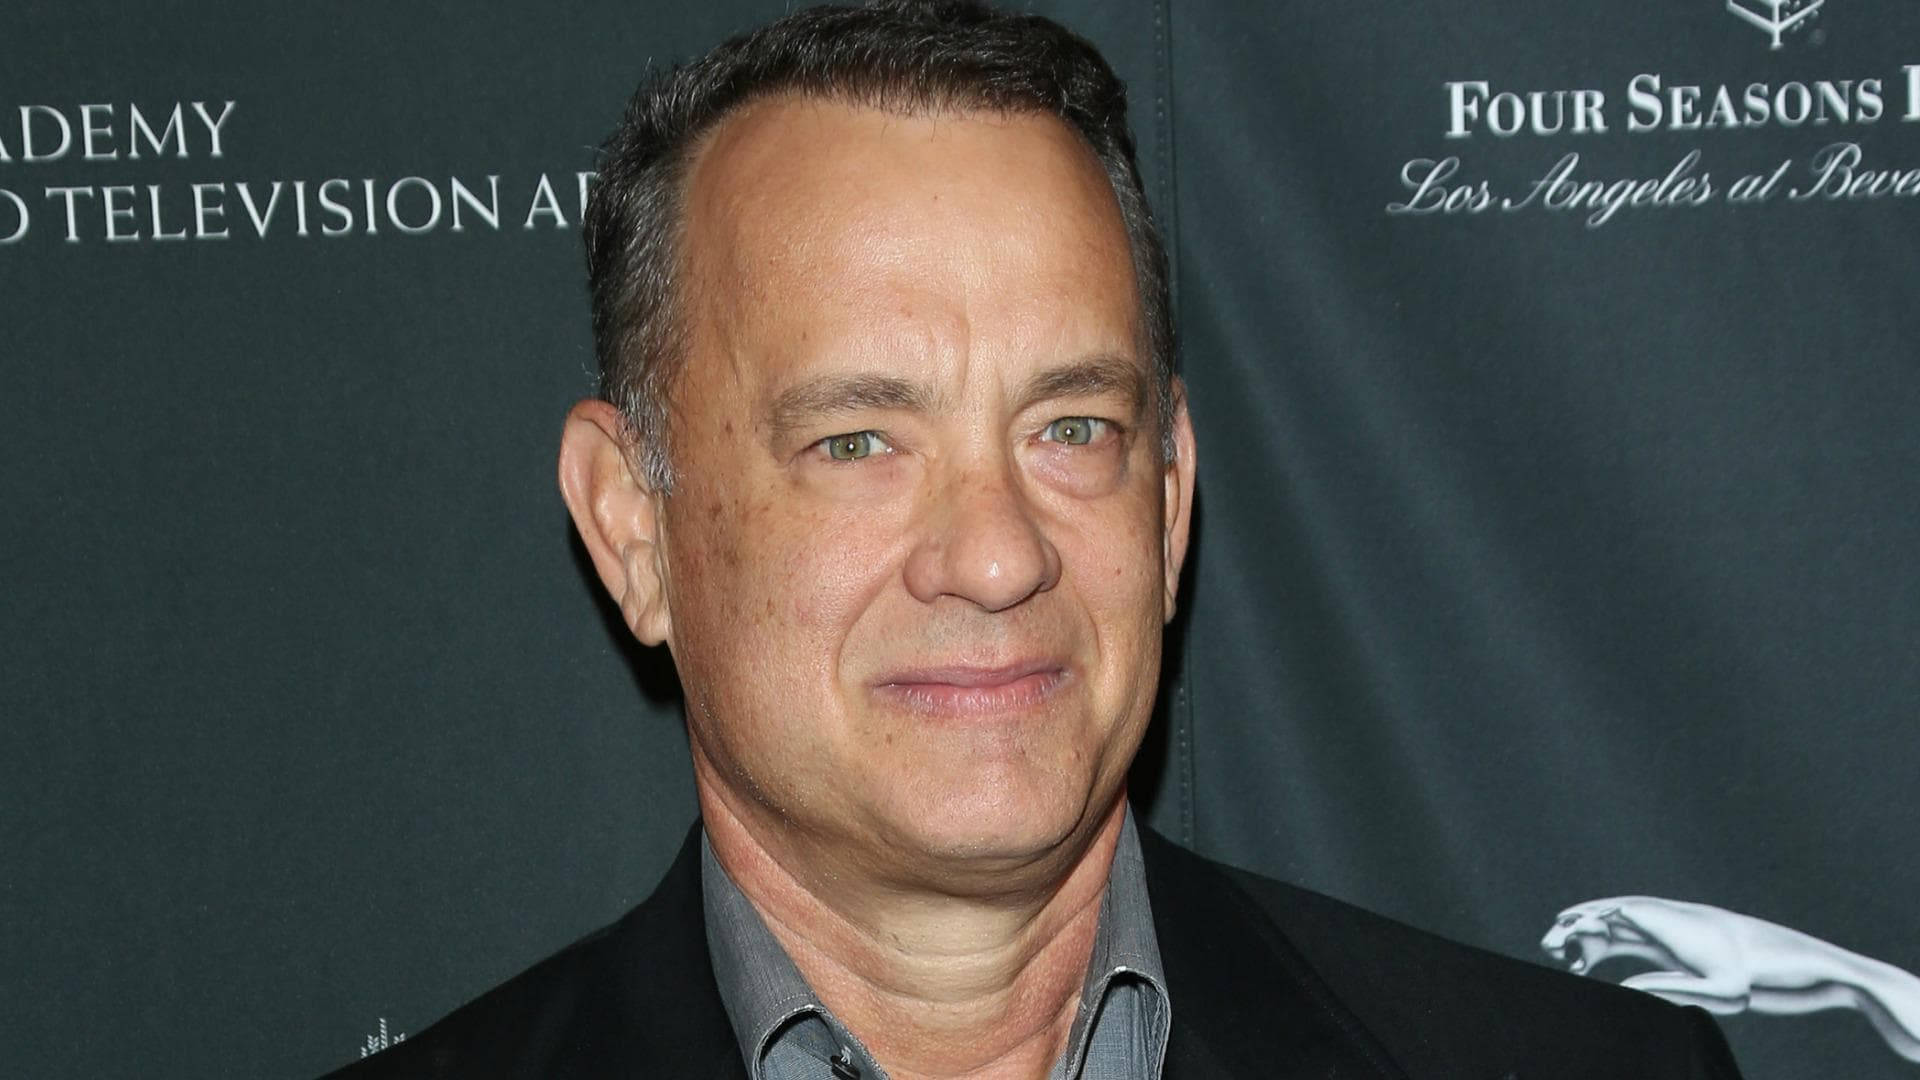 Tom Hanks Veteran Award Winning Actor